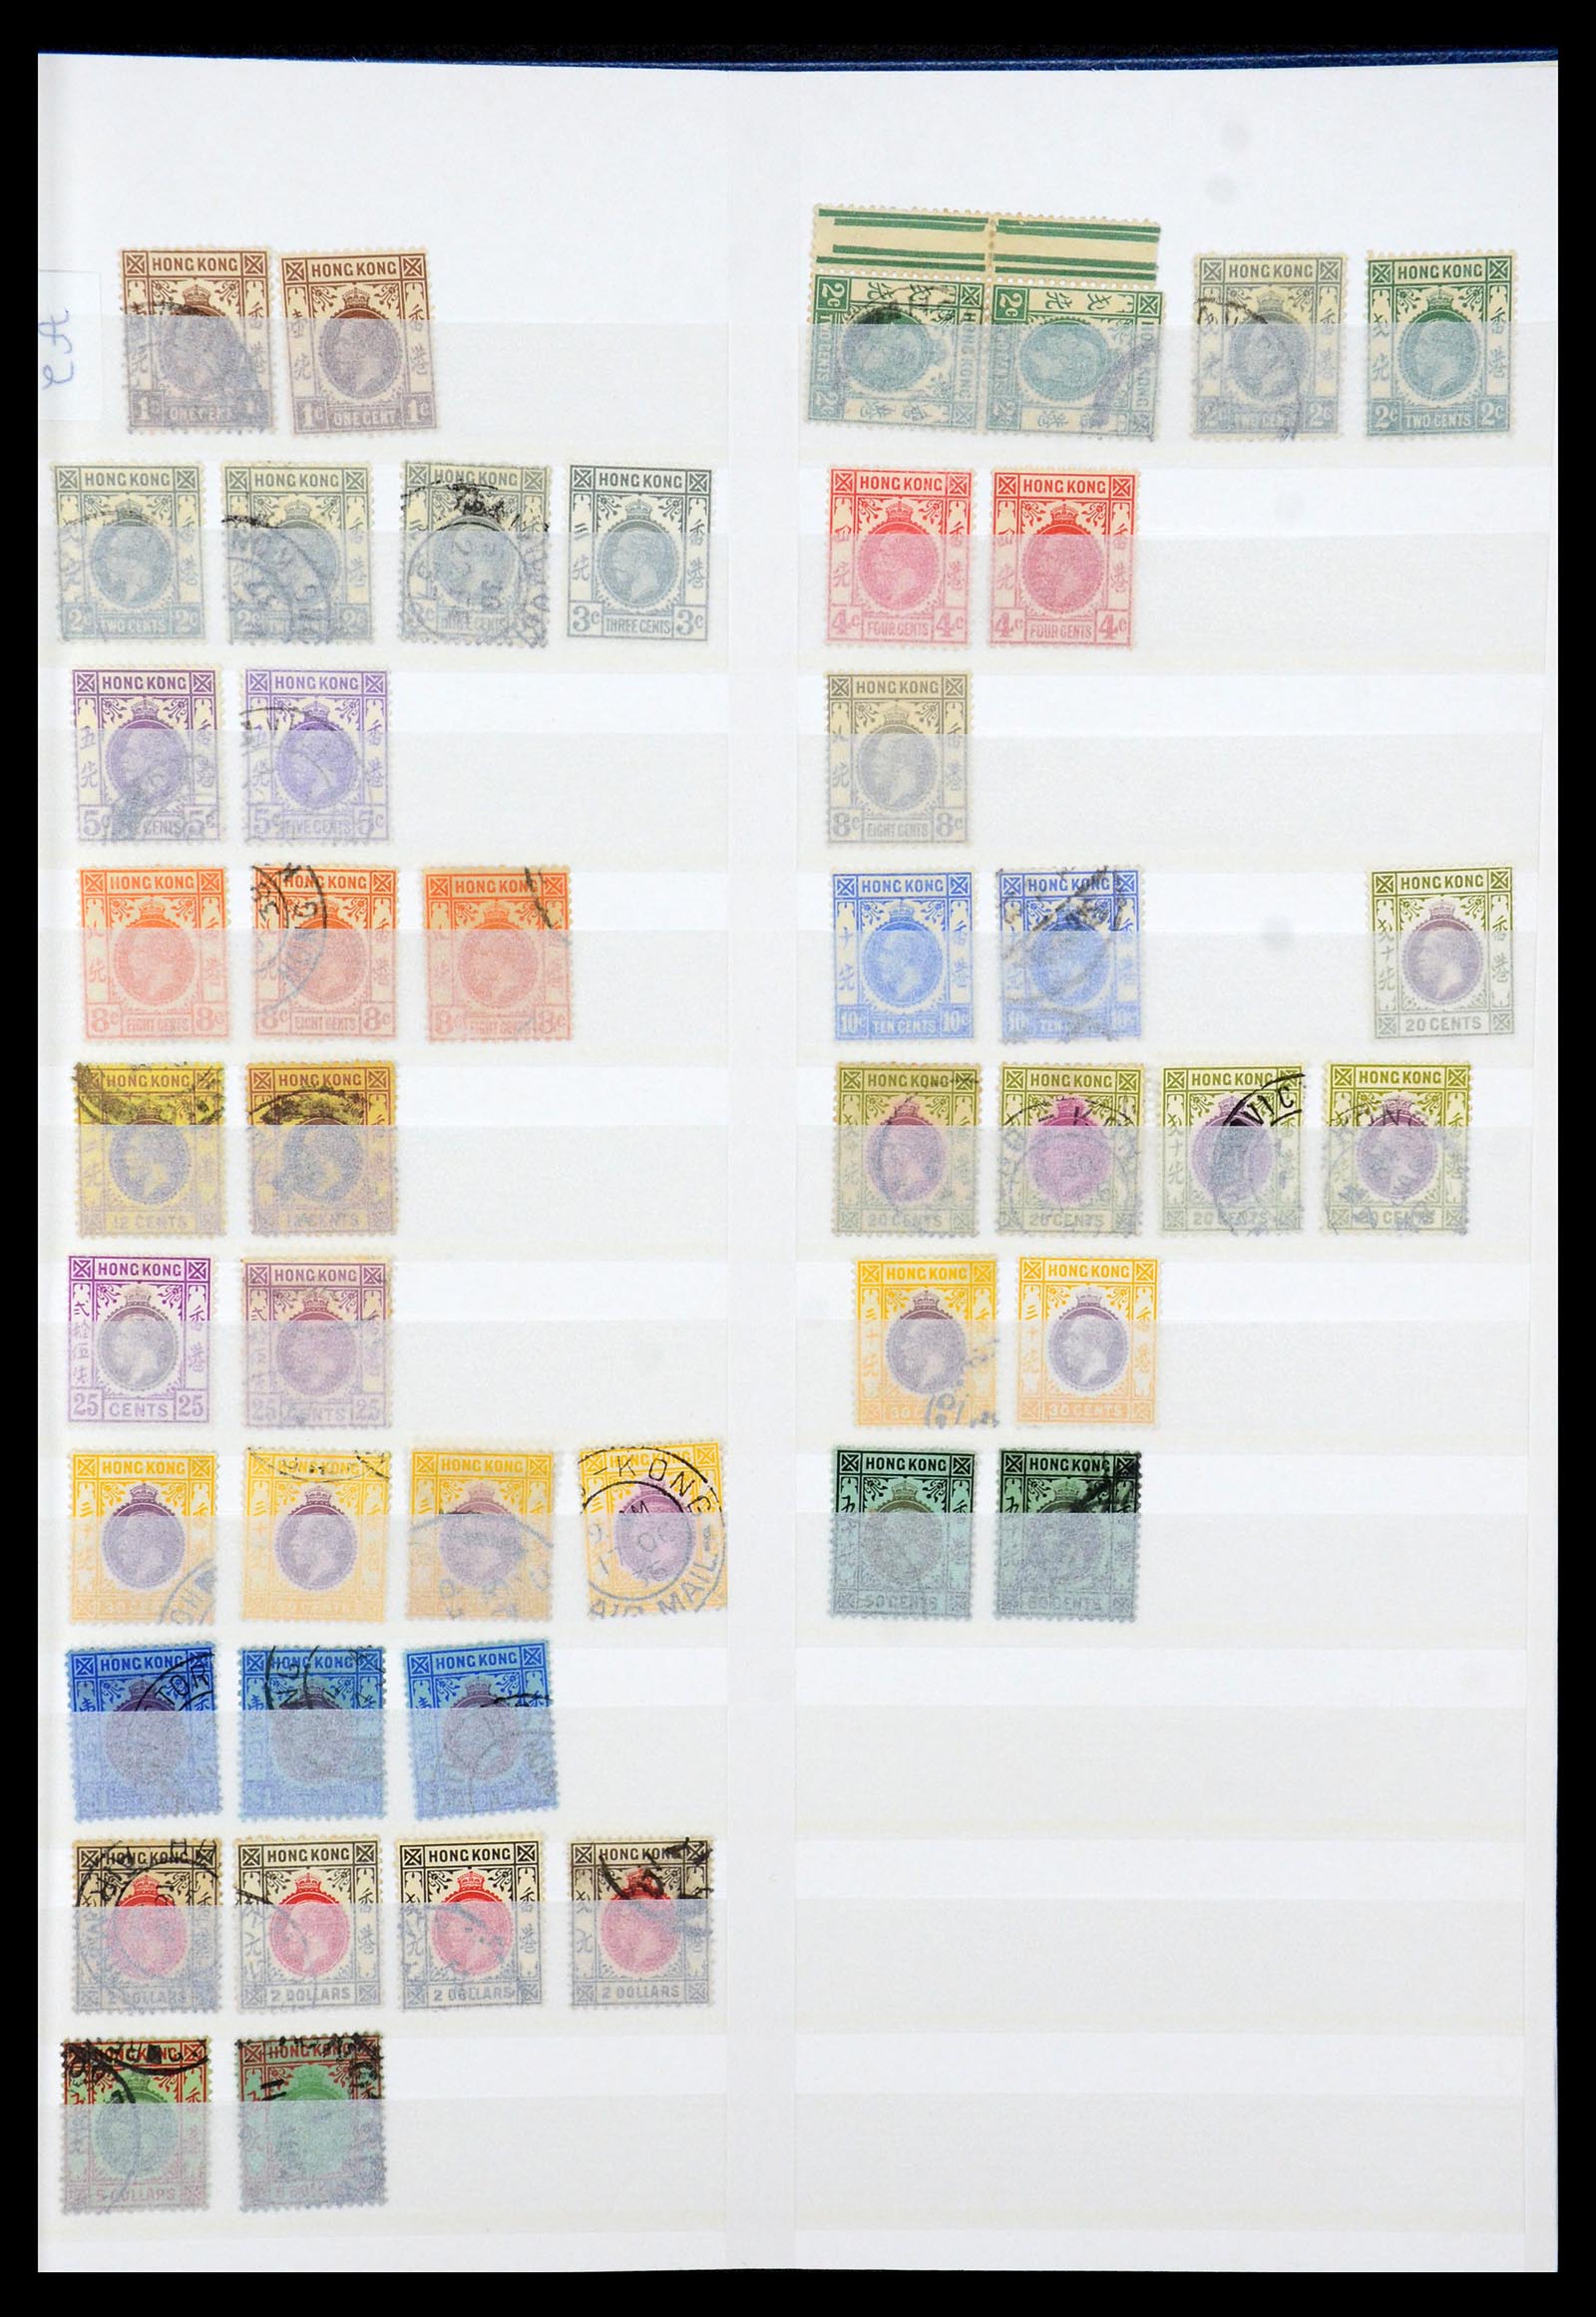 35575 007 - Stamp Collection 35575 Hong Kong 1863-2007.